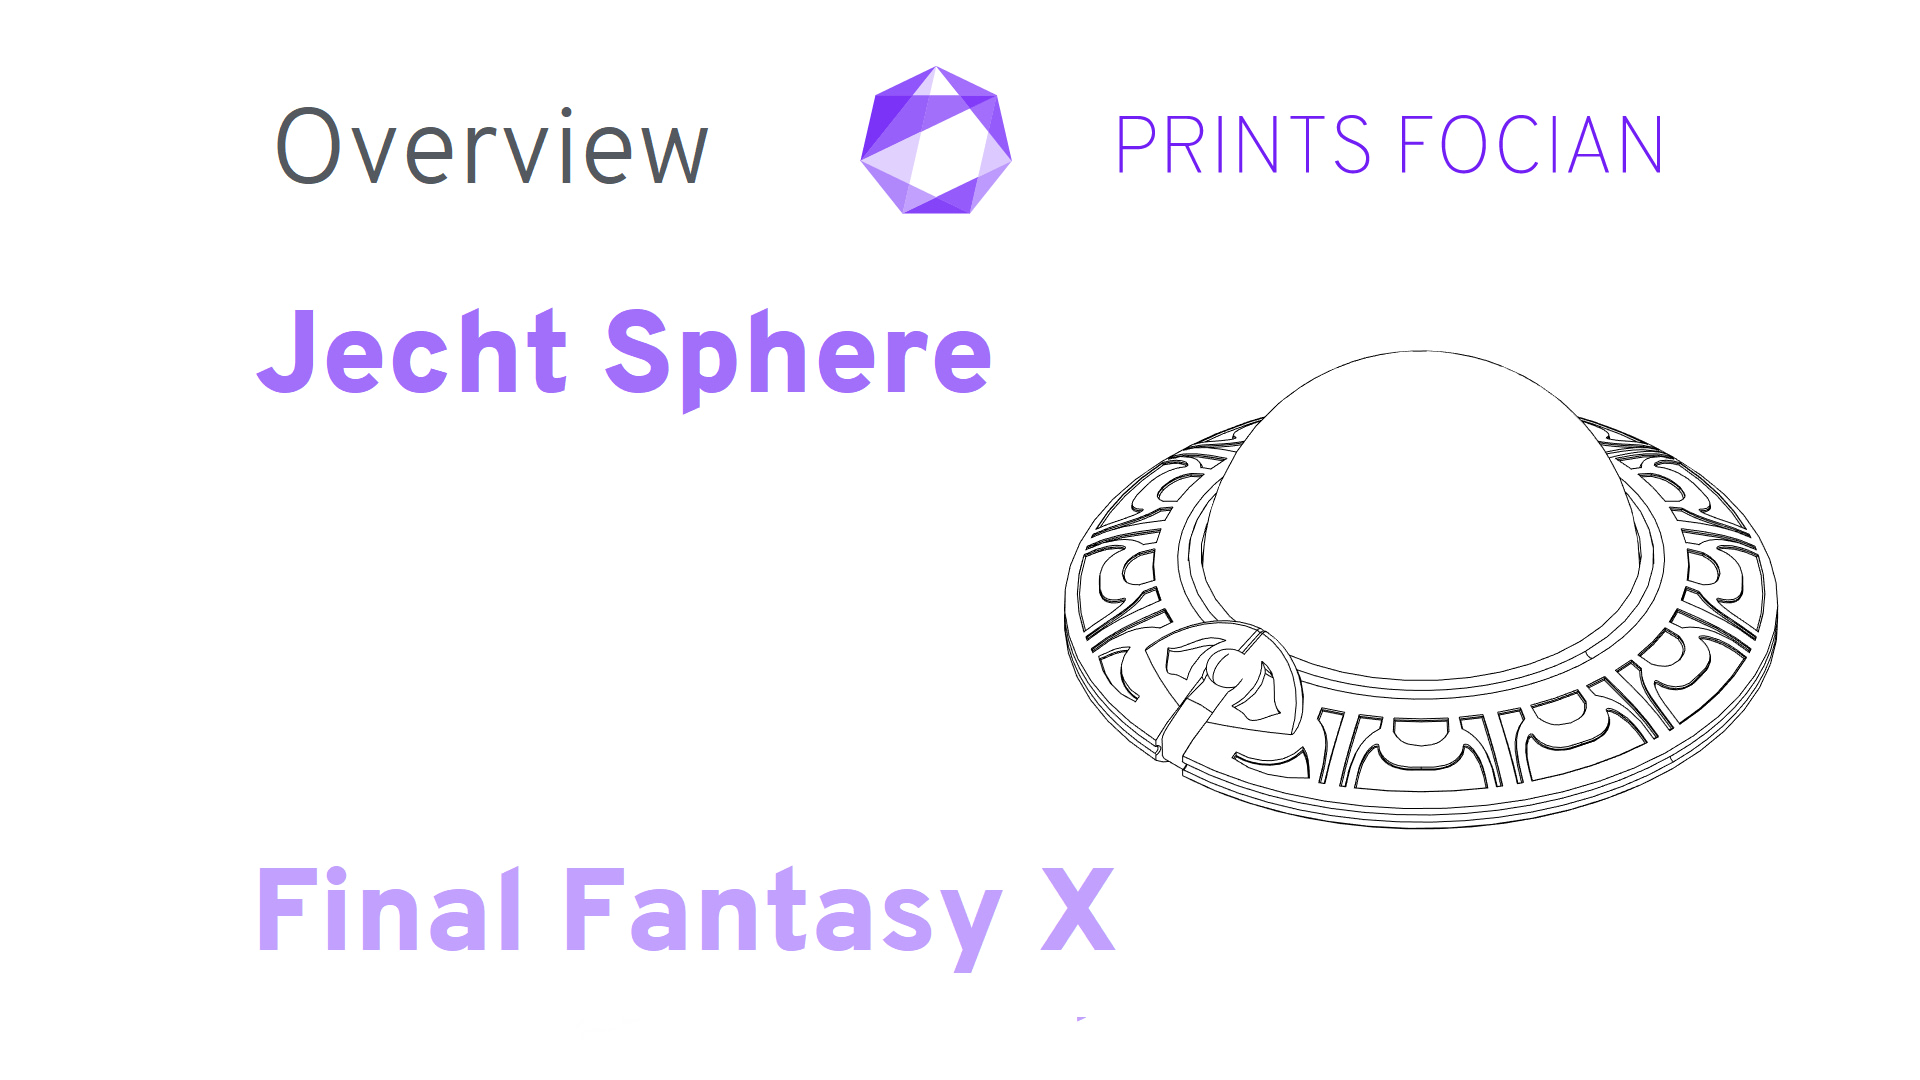 Text: Prints Focian, Overview, Jecht Sphere, Final Fantasy X. Image of FFX Sphere.